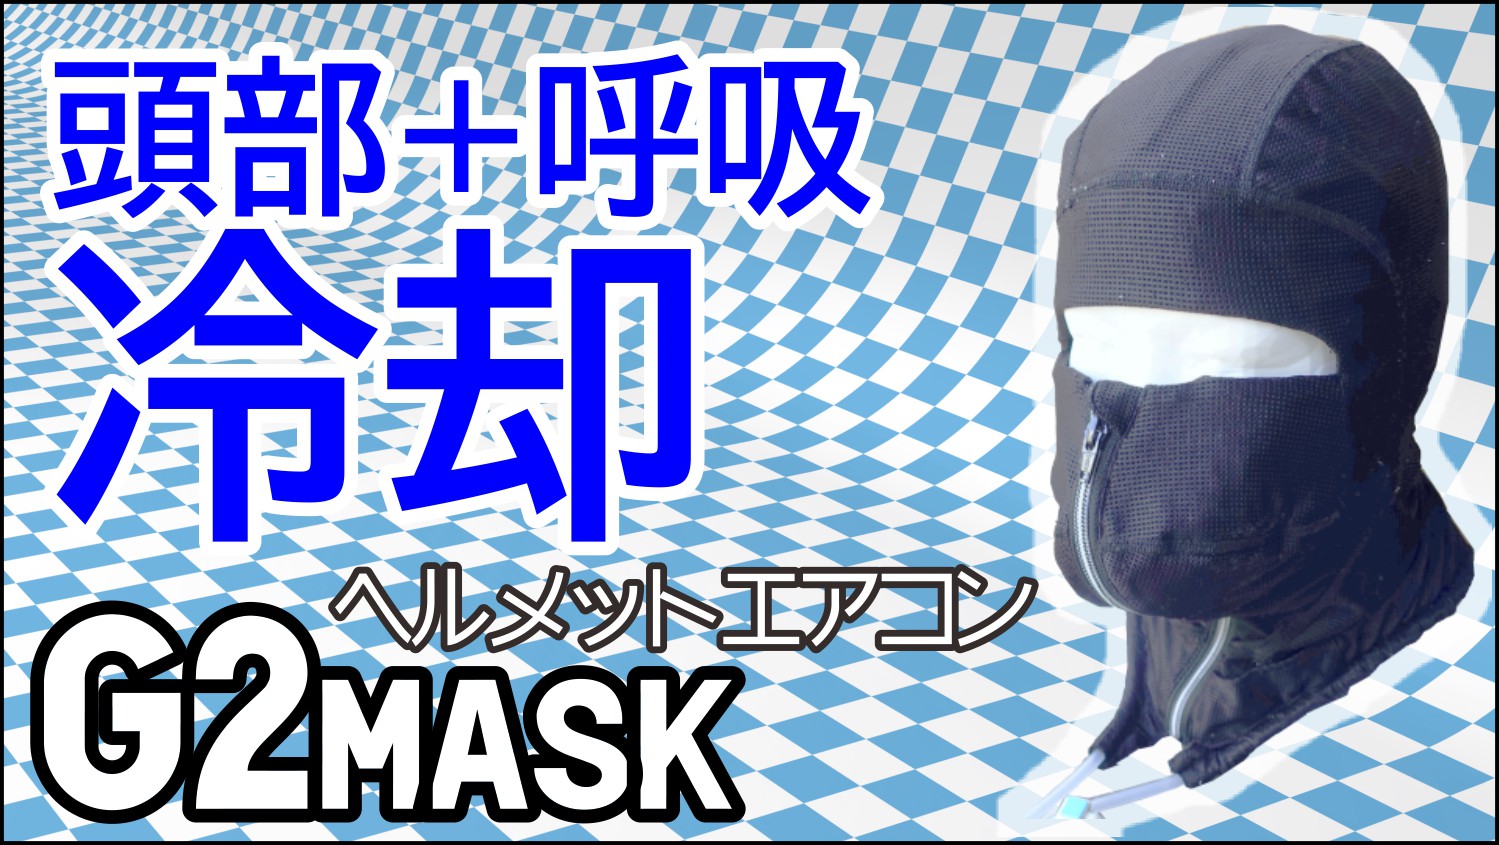 ヘルメットエアコンG2mask 単品・呼吸も冷やせる・頭部冷却着衣フルフード水冷服(下着)人間エアコンCoolArmor G2mask熱中症対策